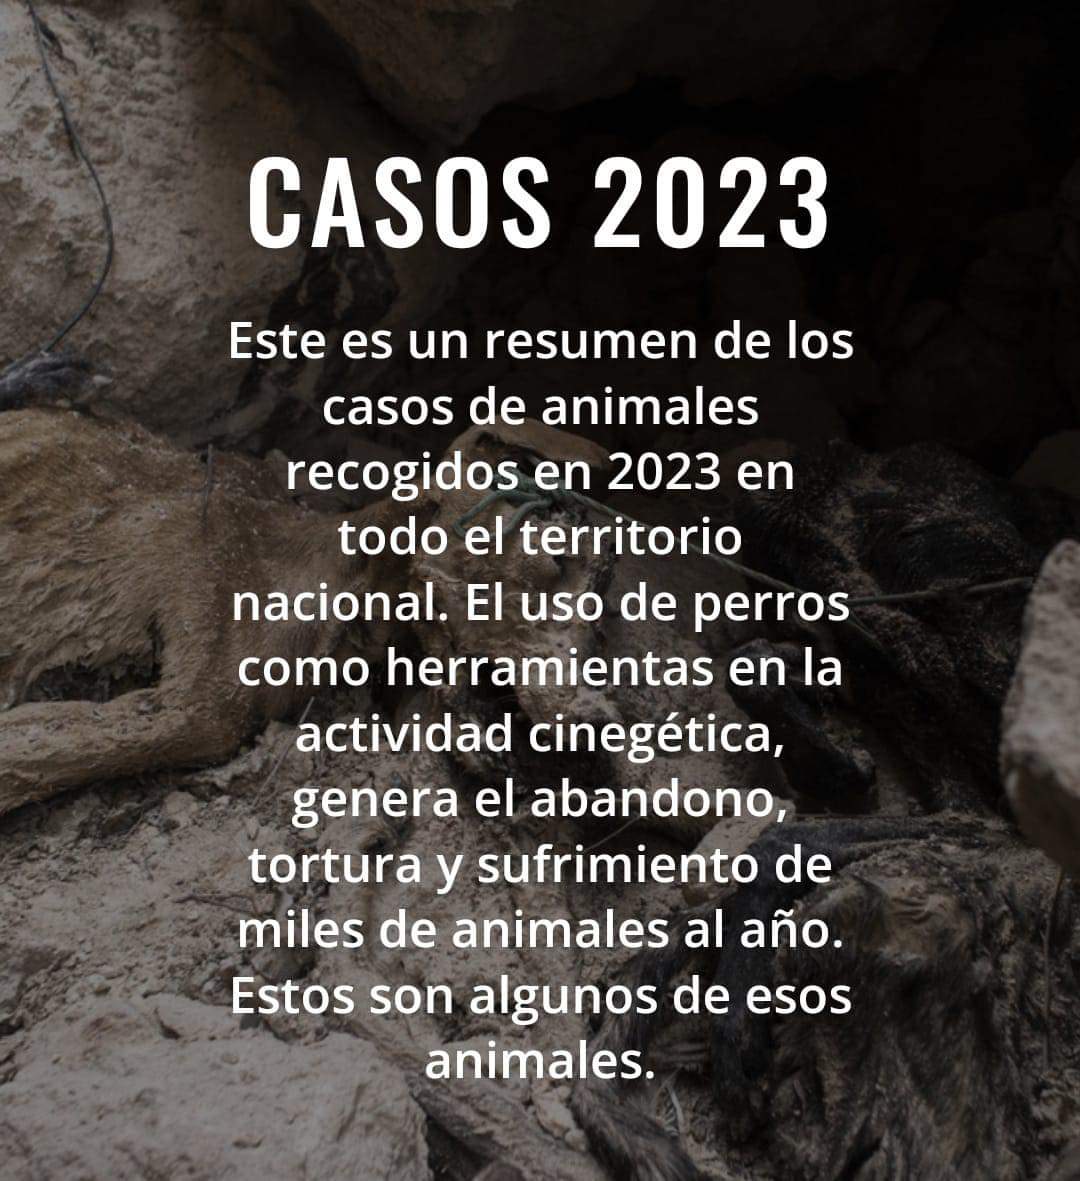 #VictimasDeLaCaza

Este es un resumen de los casos de animales recogidos en 2023 en todo el territorio nacional. 
👉 Estos son algunos de esos animales:
plataformanac.org/victimas-de-la…

#NoAlaCaza
#NoAlaCazaConPerros
#LaVerdadDeLaCaza
⤵️